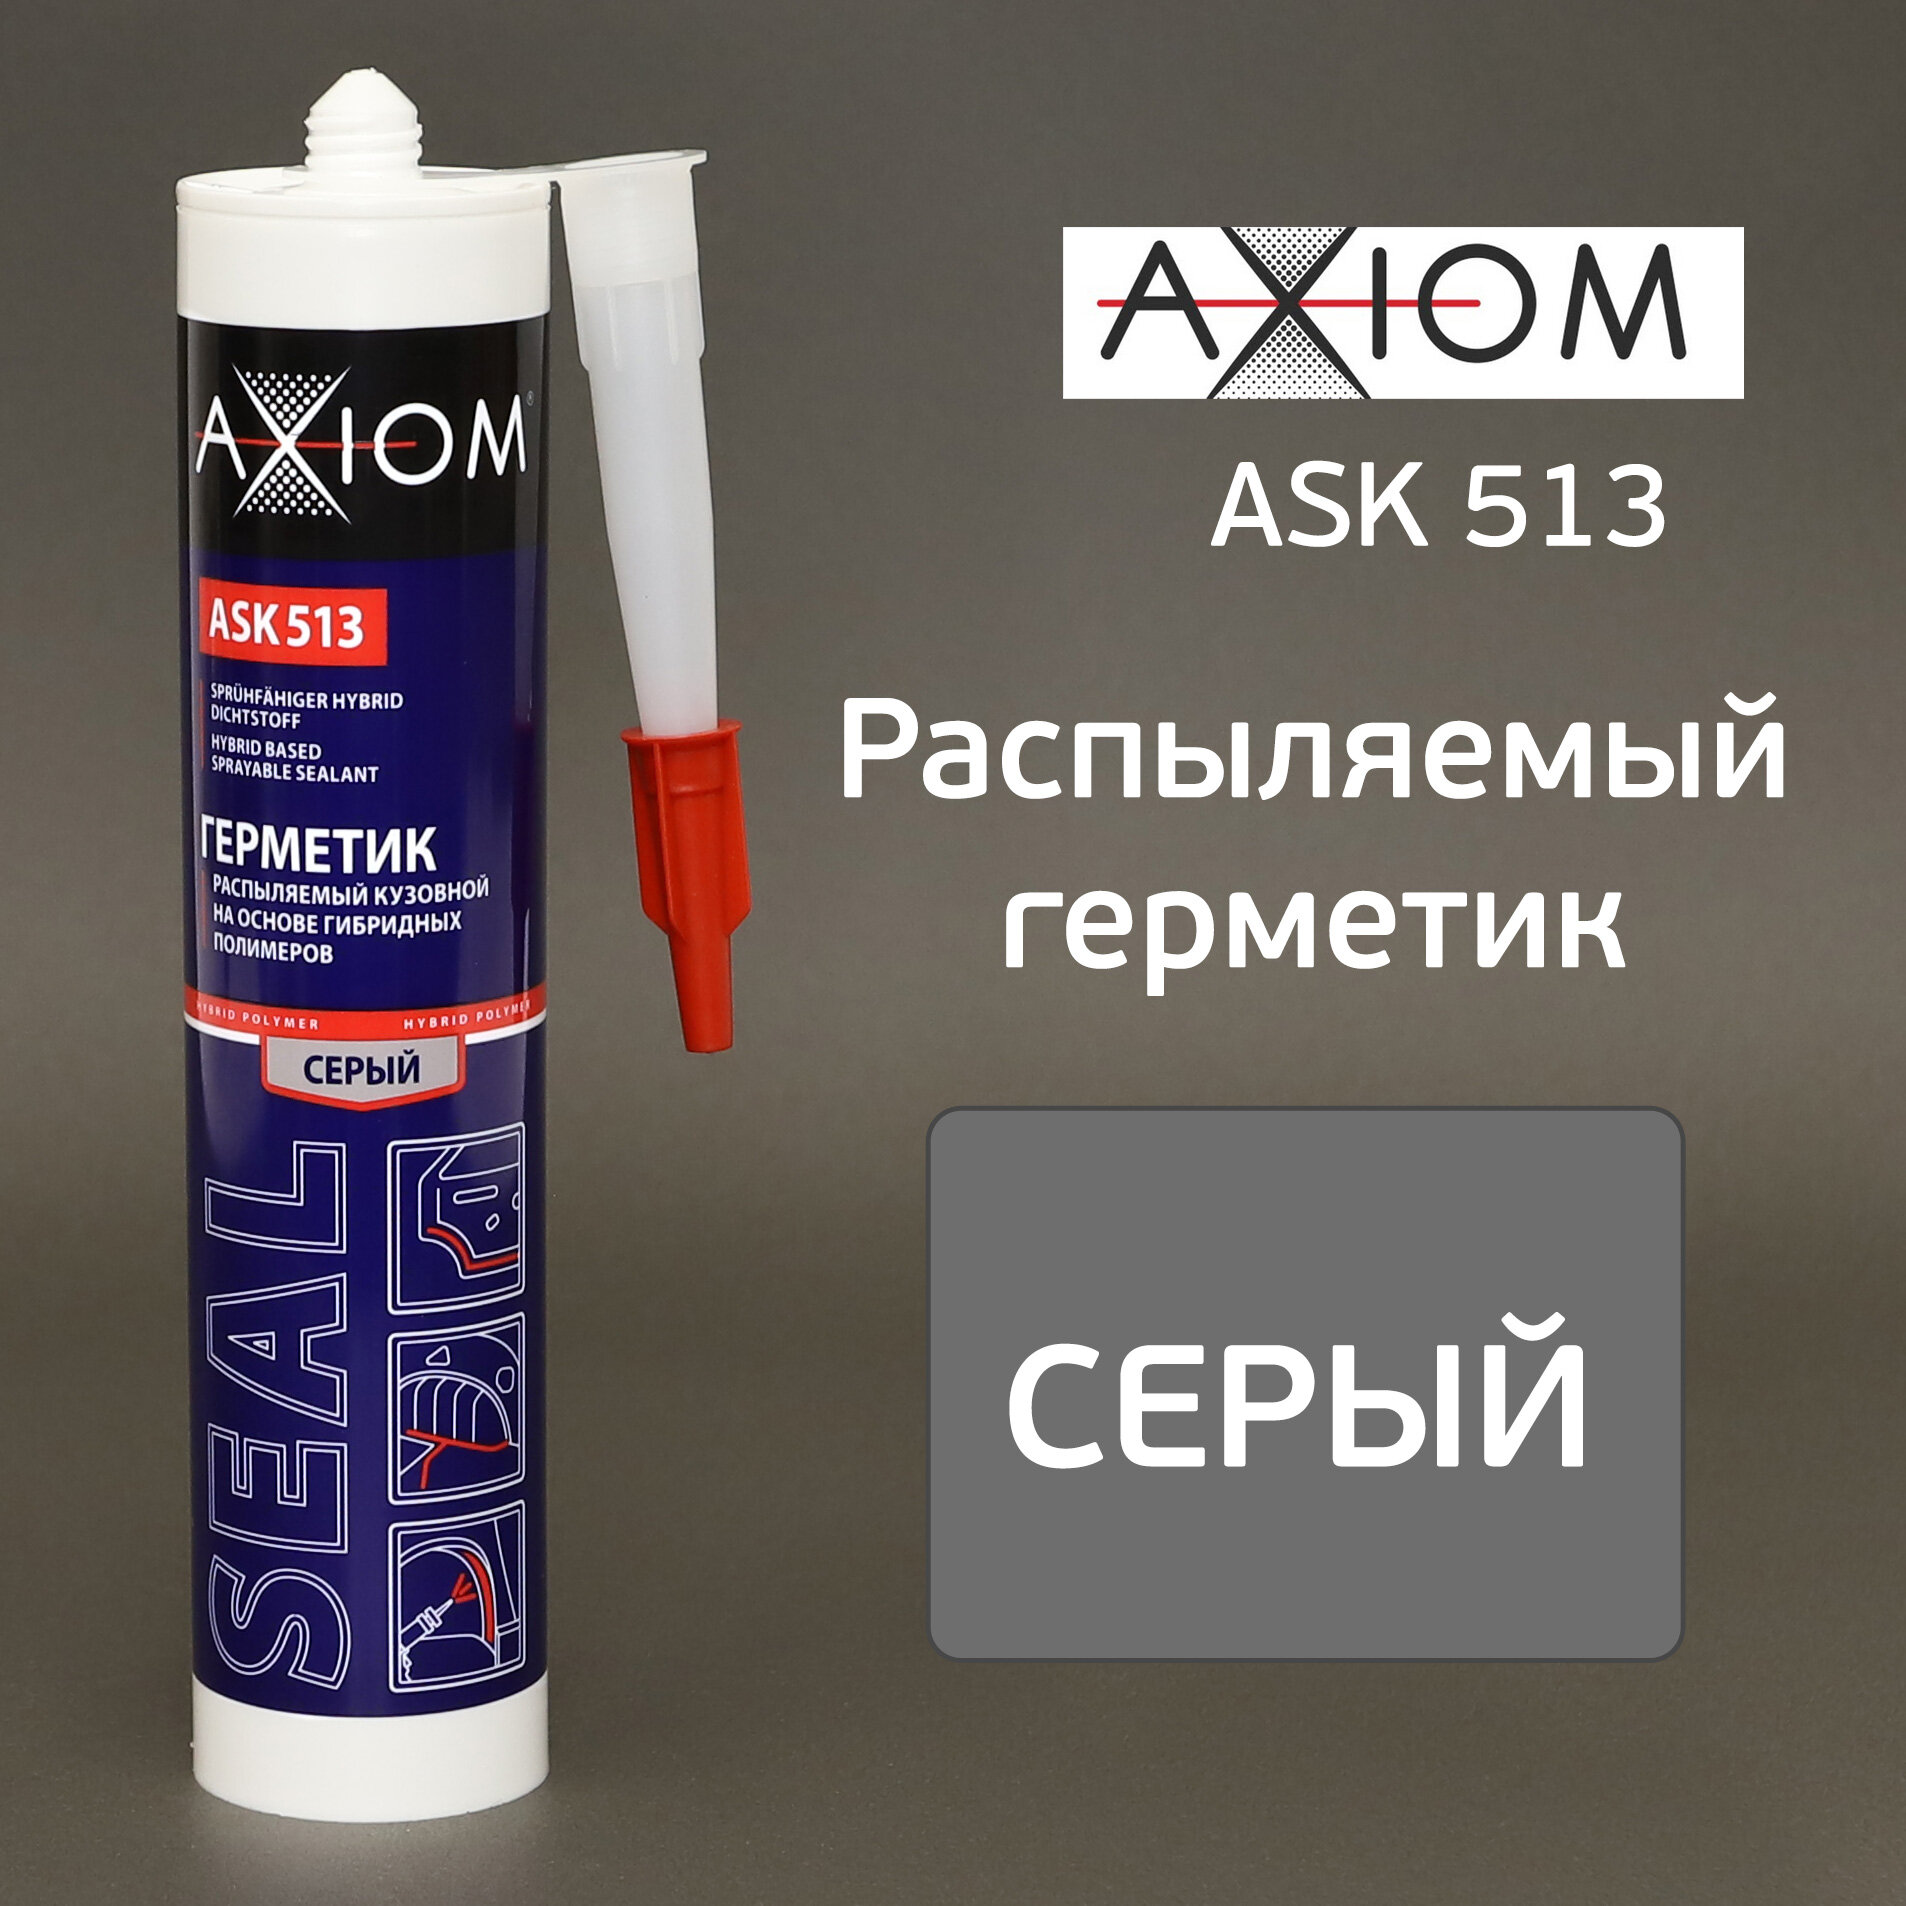 Axiom Герметик Распыляемый Кузовной На Основе Гибридых Полимеров Серый Ask513 (280 Мл)  Шт AXIOM арт ASK513